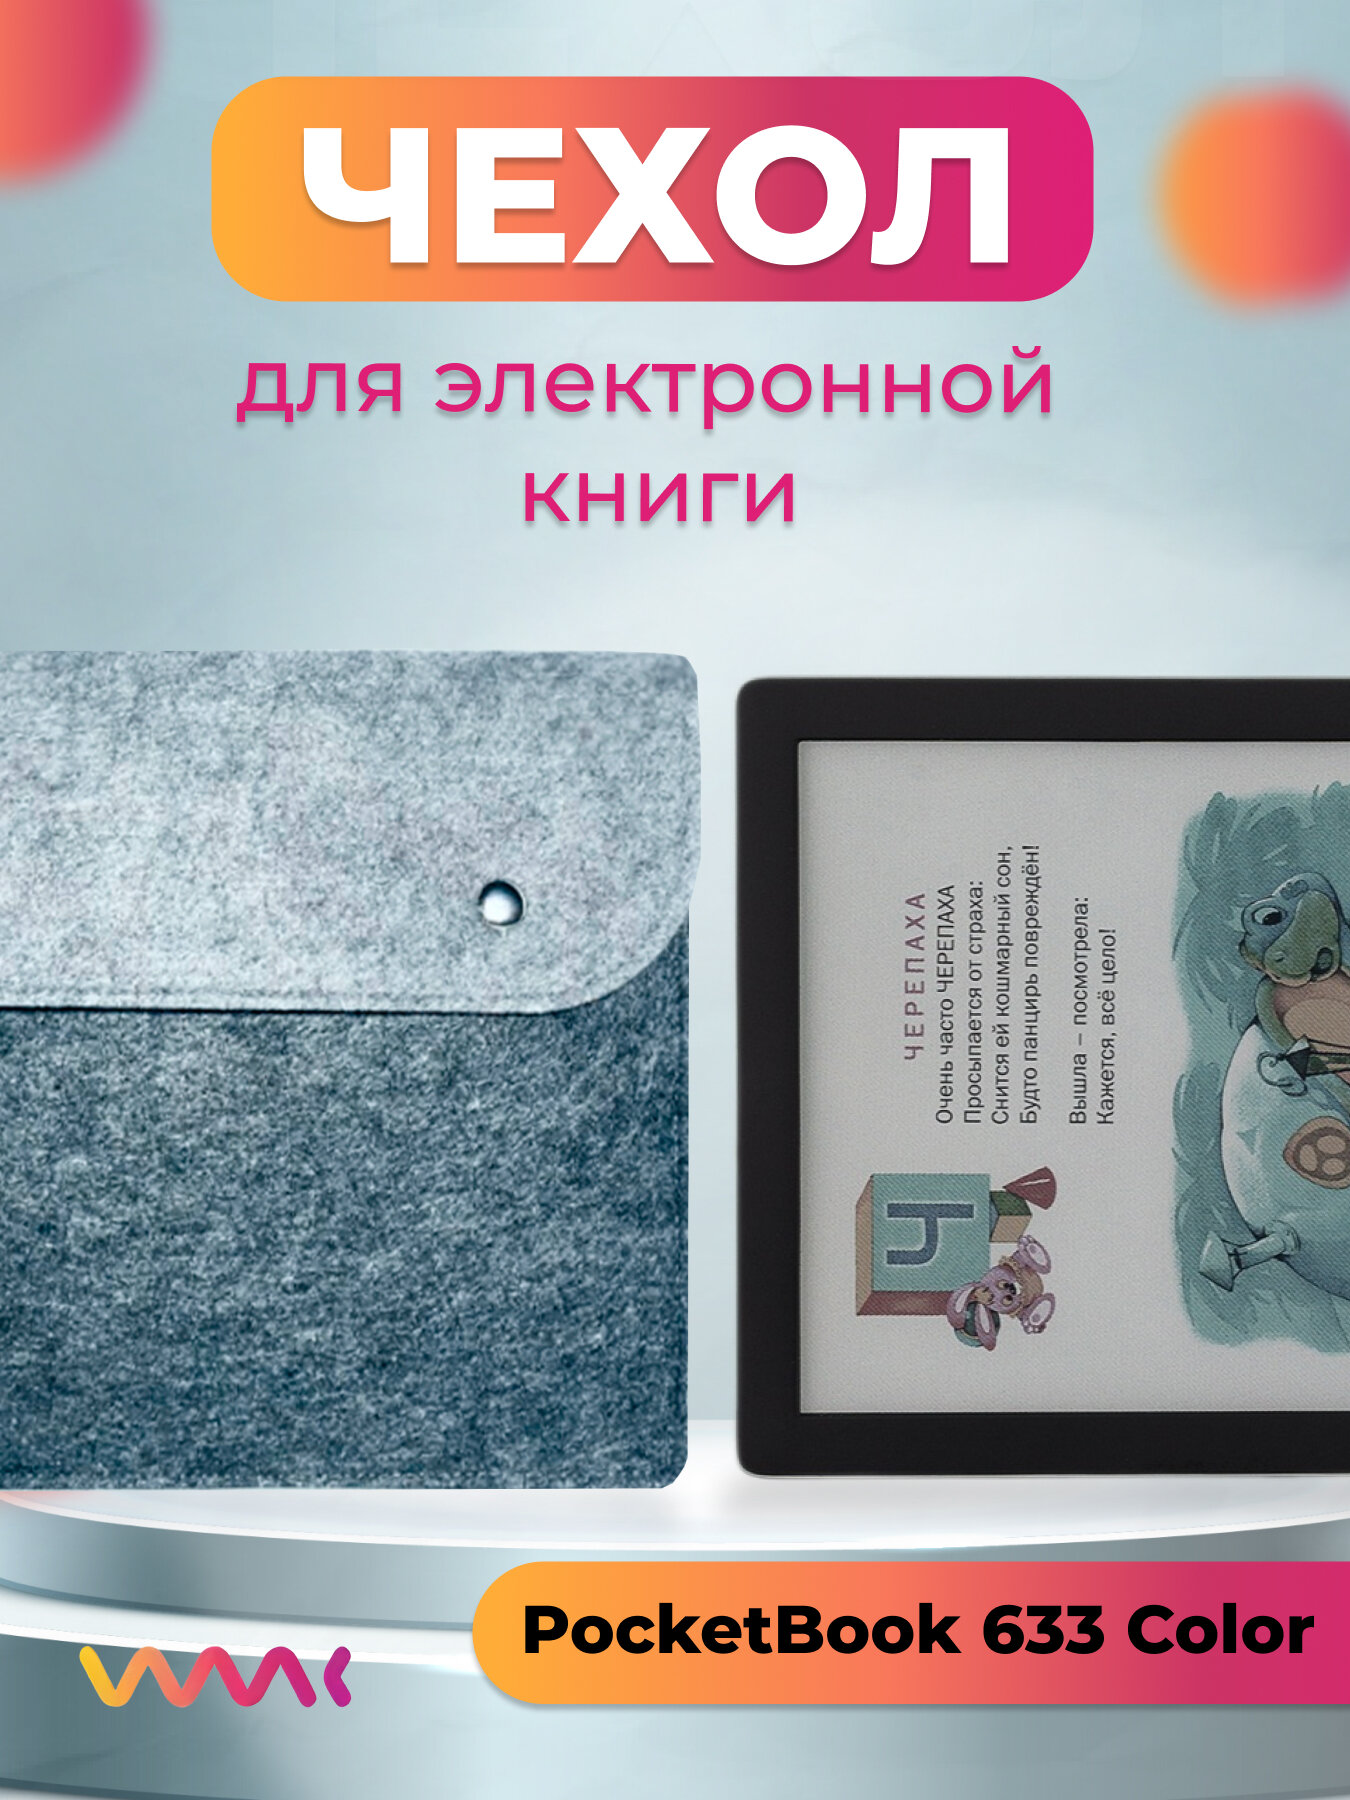 Чехол для электронной книги PocketBook 633 Color